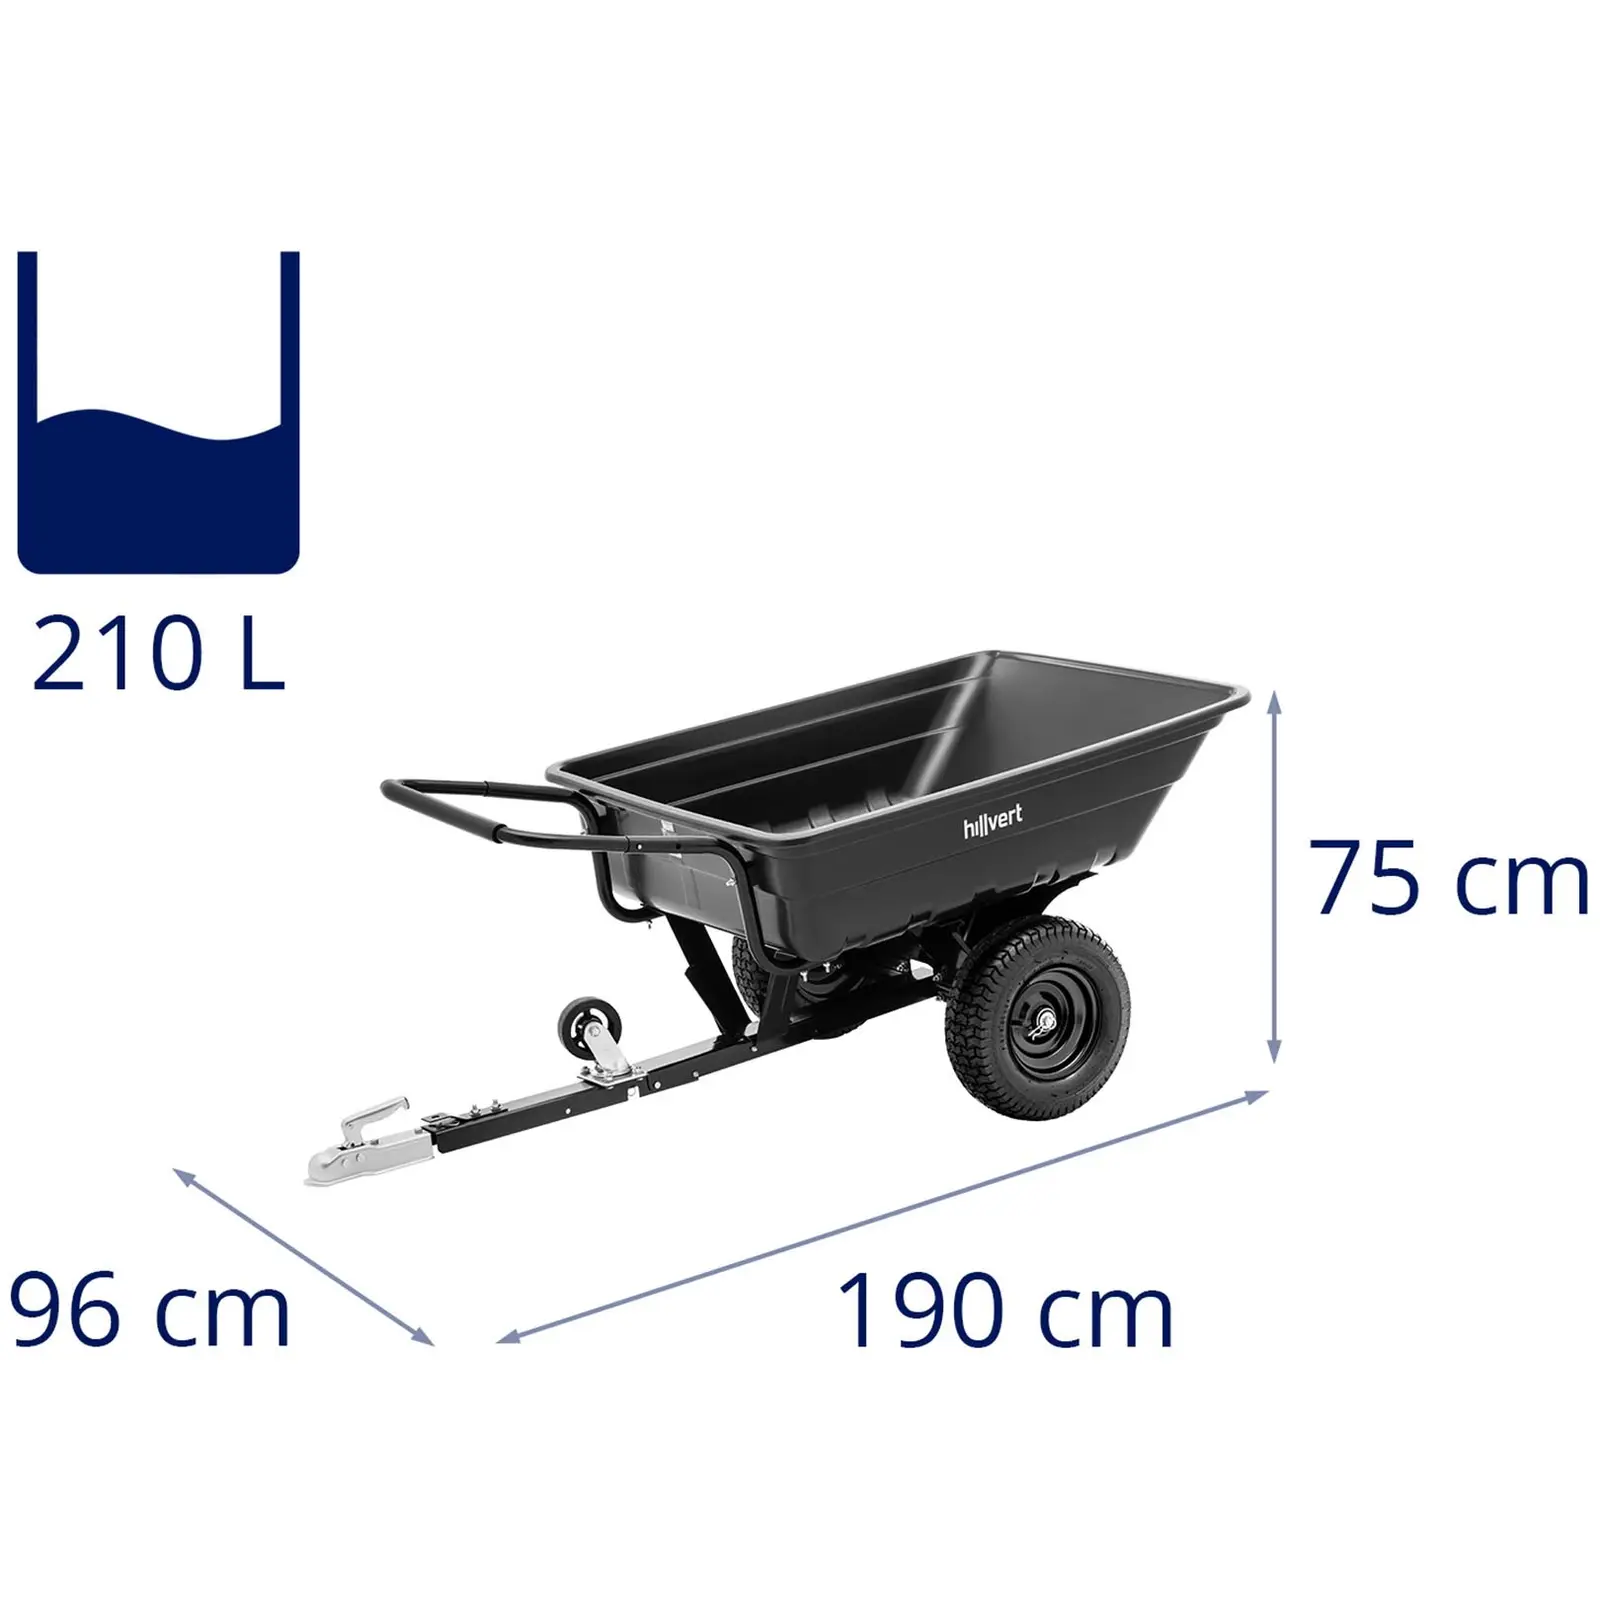 Gartenwagen - mit Anhängerkupplung - 300 kg - kippbar - 210 L